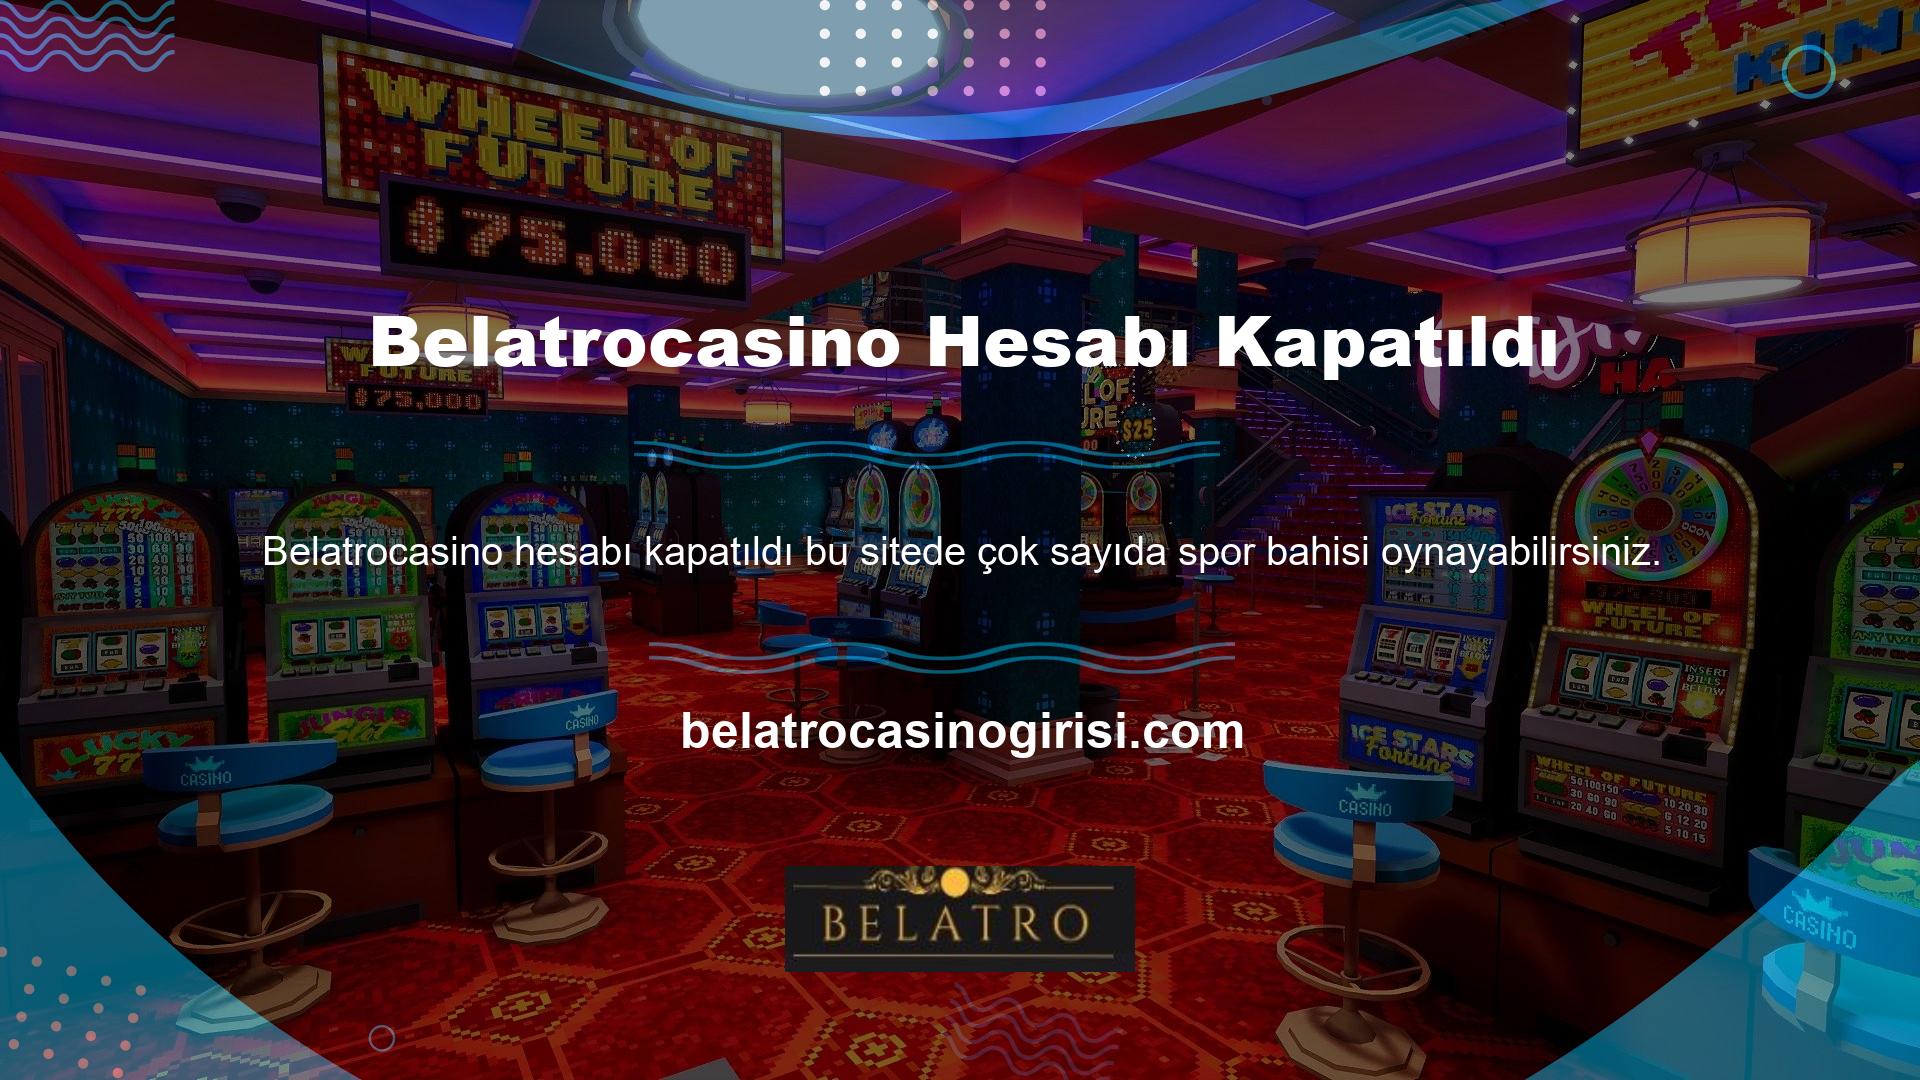 Belatrocasino ayrıca canlı casino ve casino gibi diğer oyunları da oynayabilirsiniz